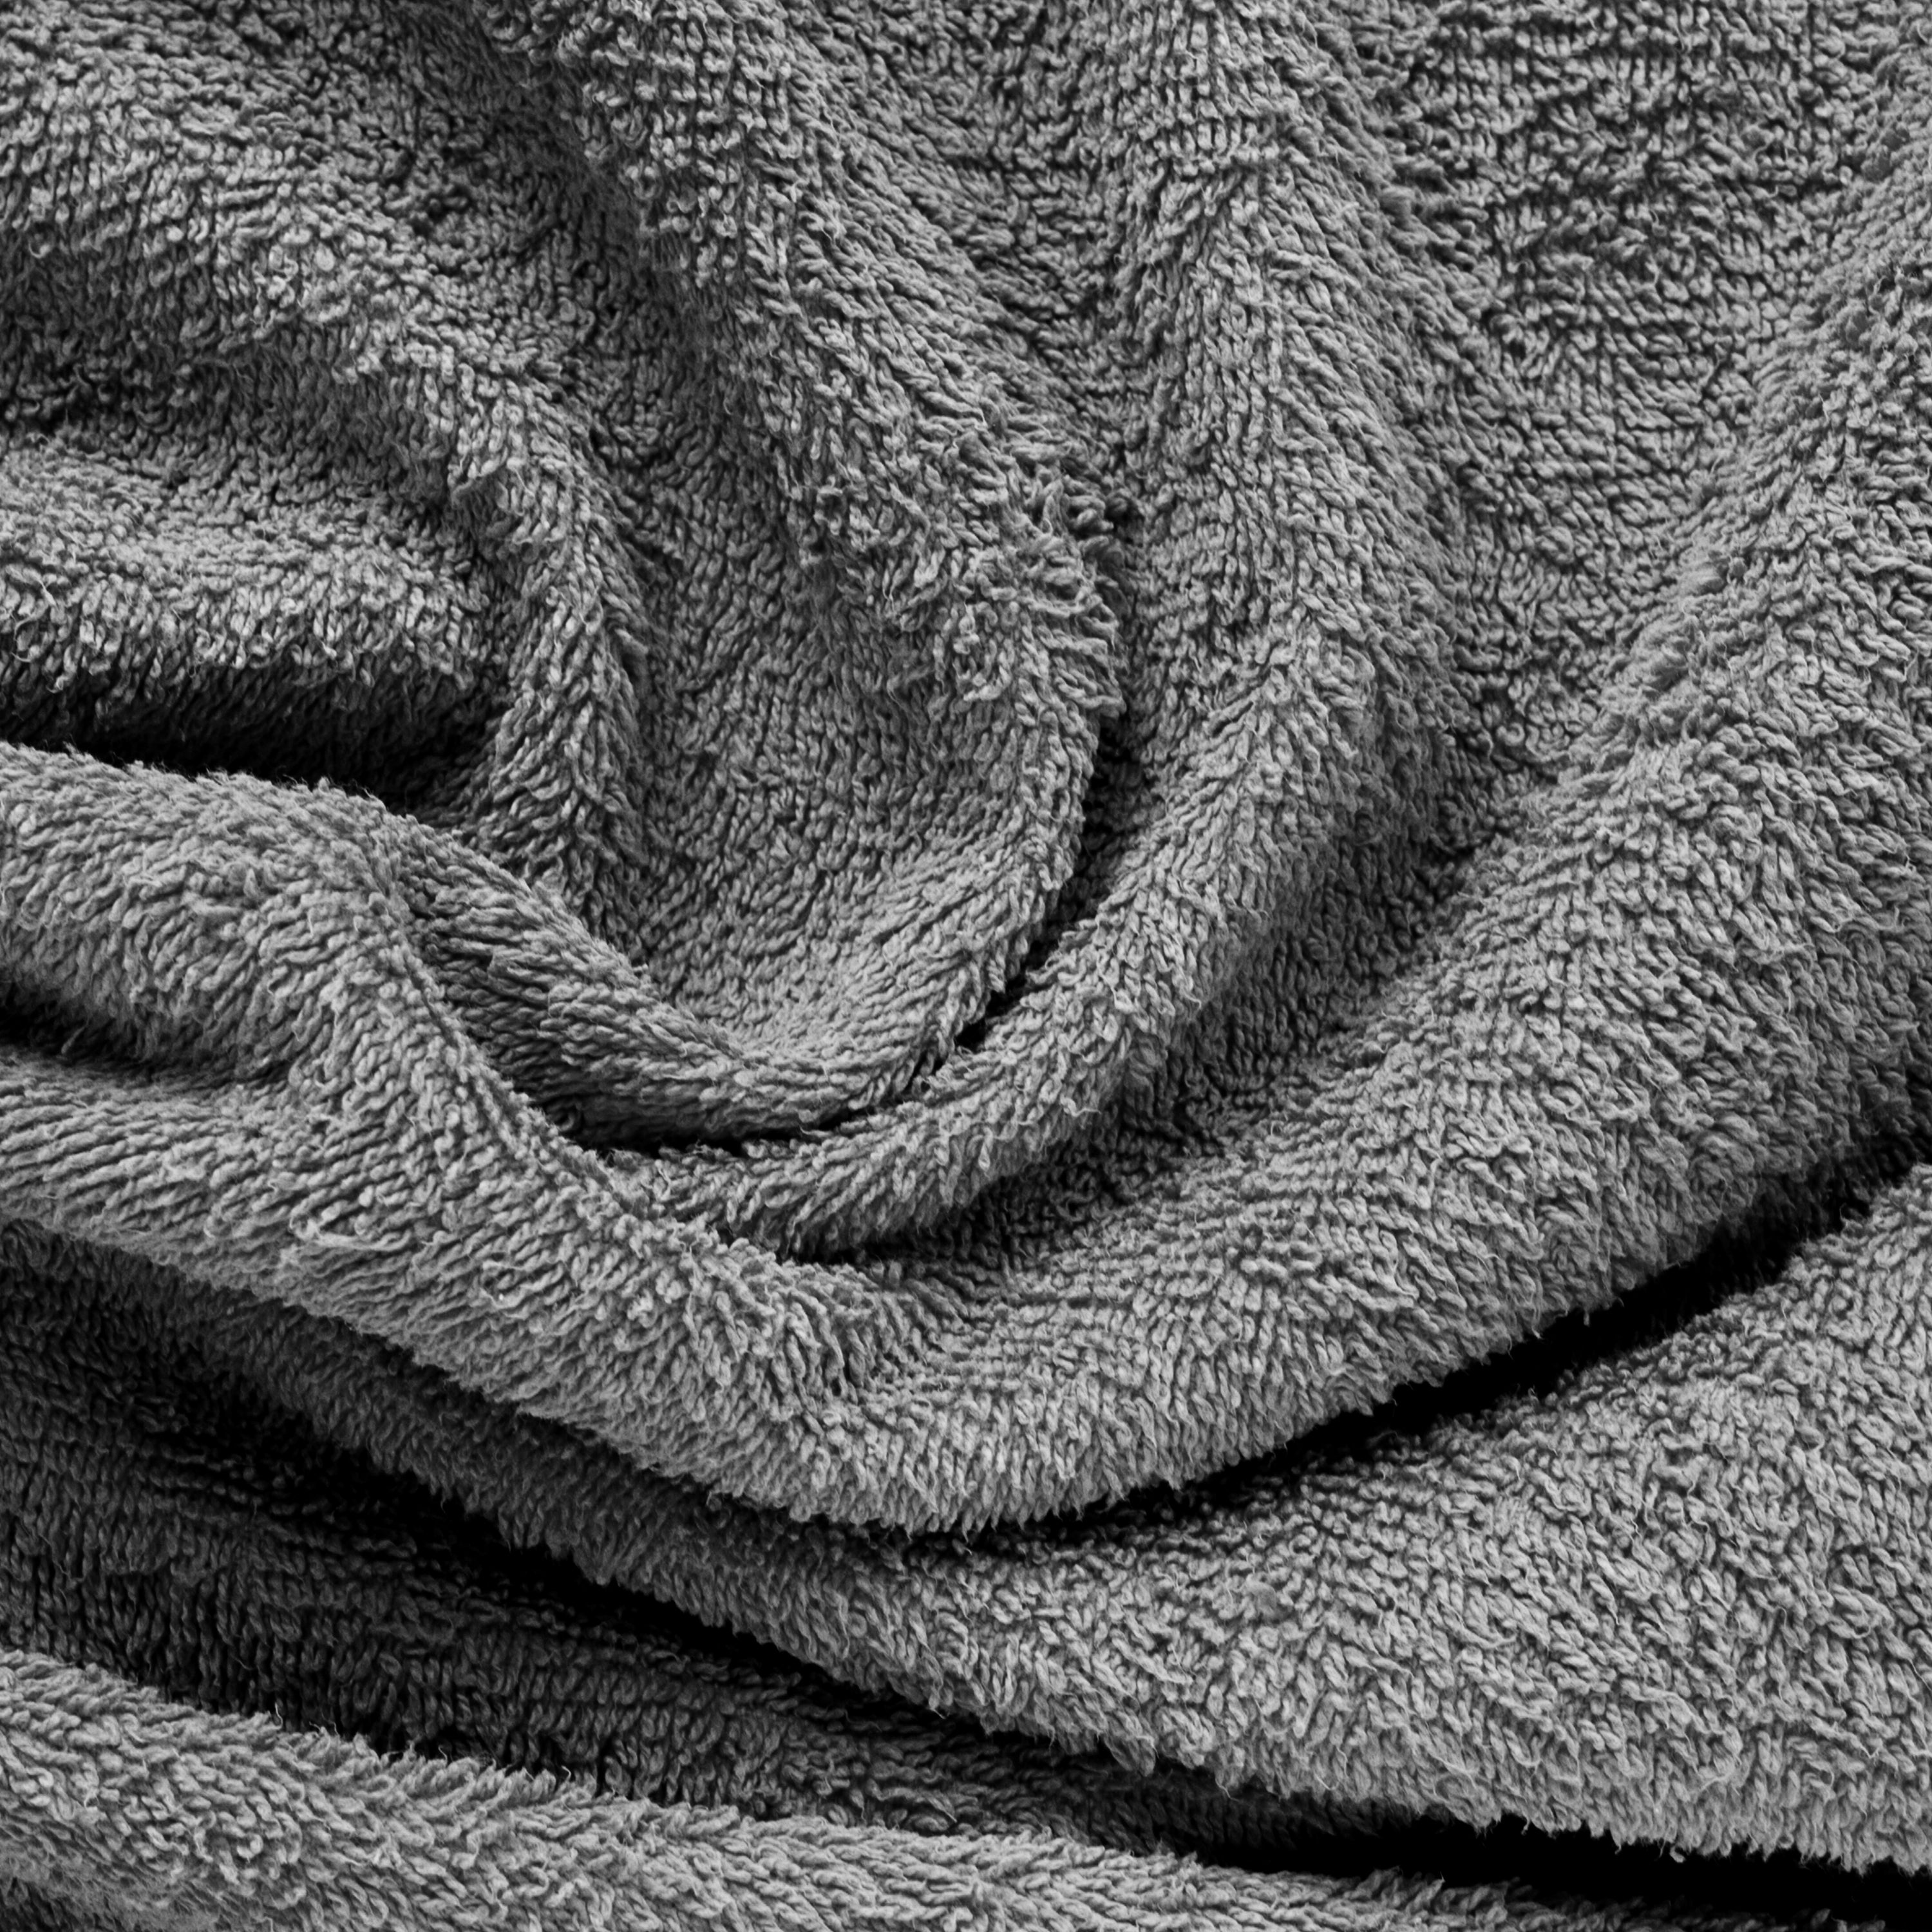 Aquacado 38 x 58 cm Hand Towel Set Of 4 Charcoal Grey & Rust